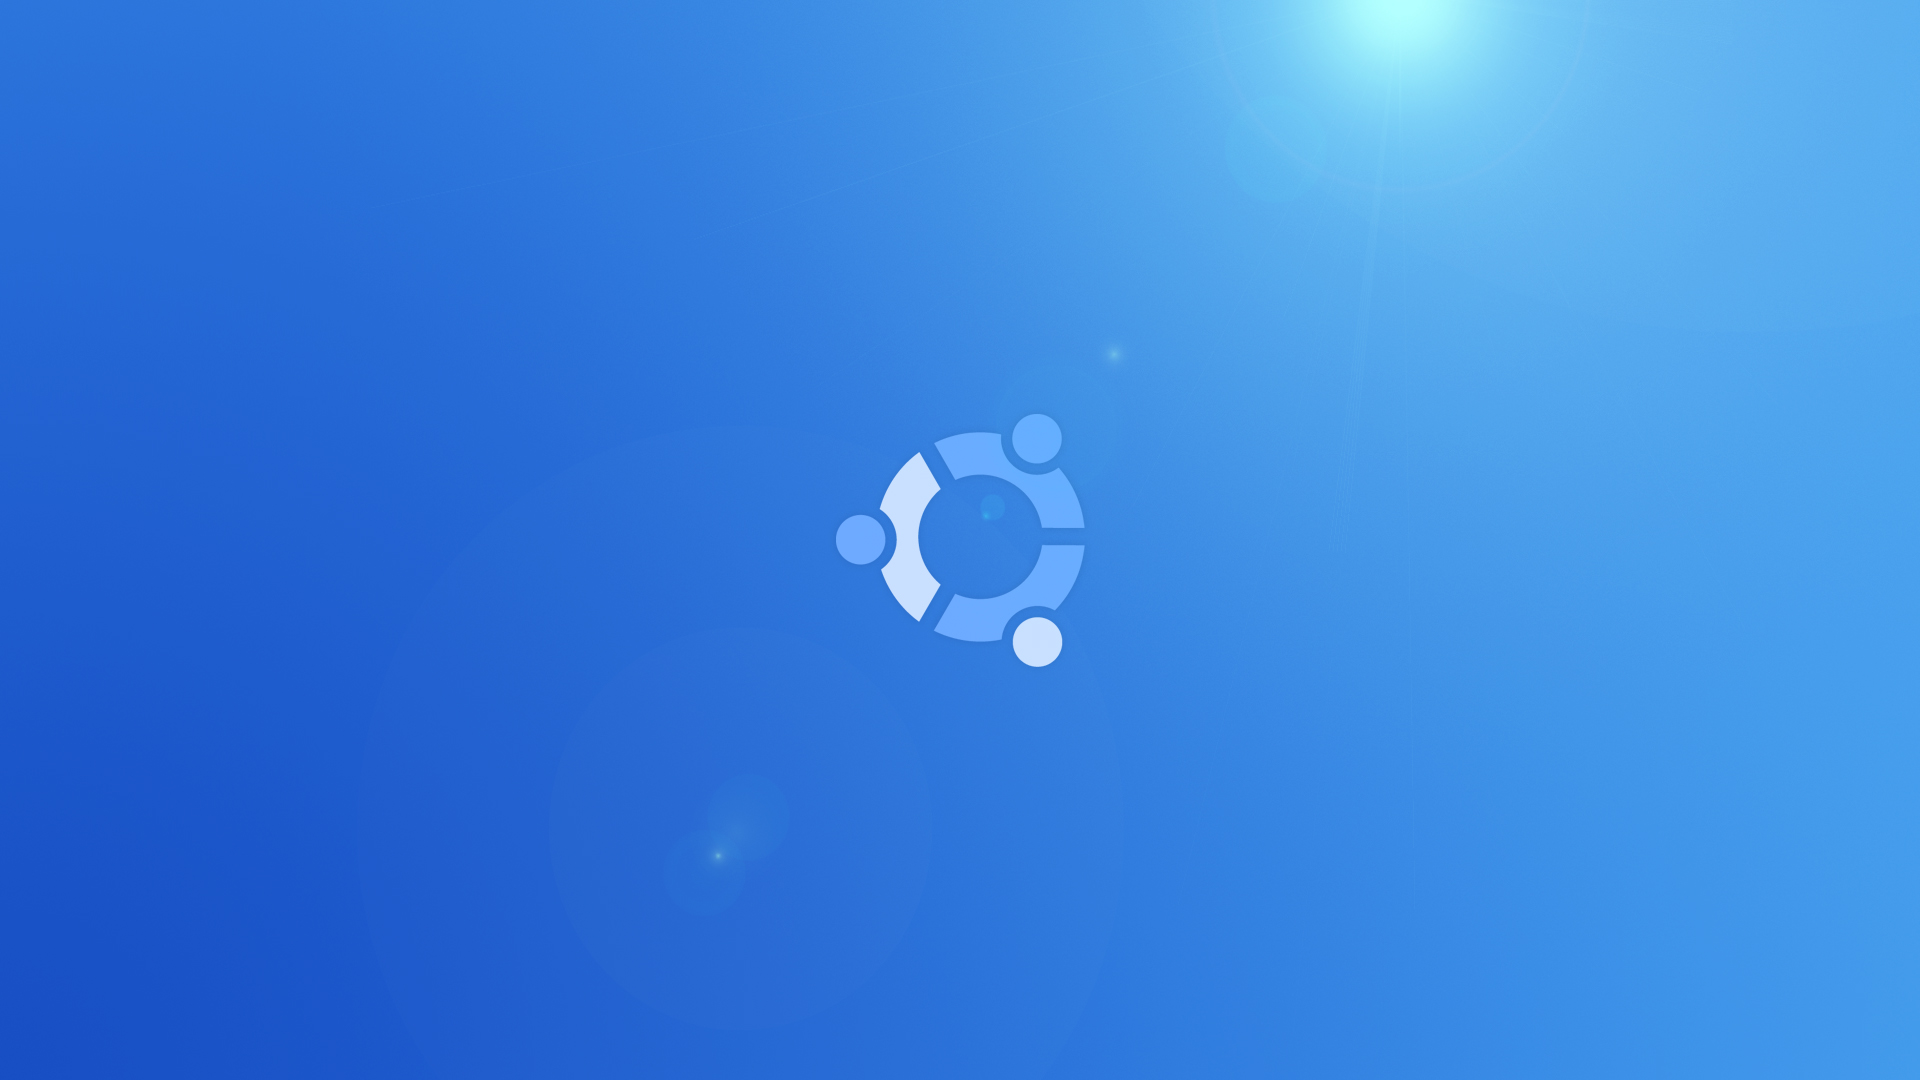 ubuntuの壁紙,青い,昼間,コバルトブルー,空,アクア